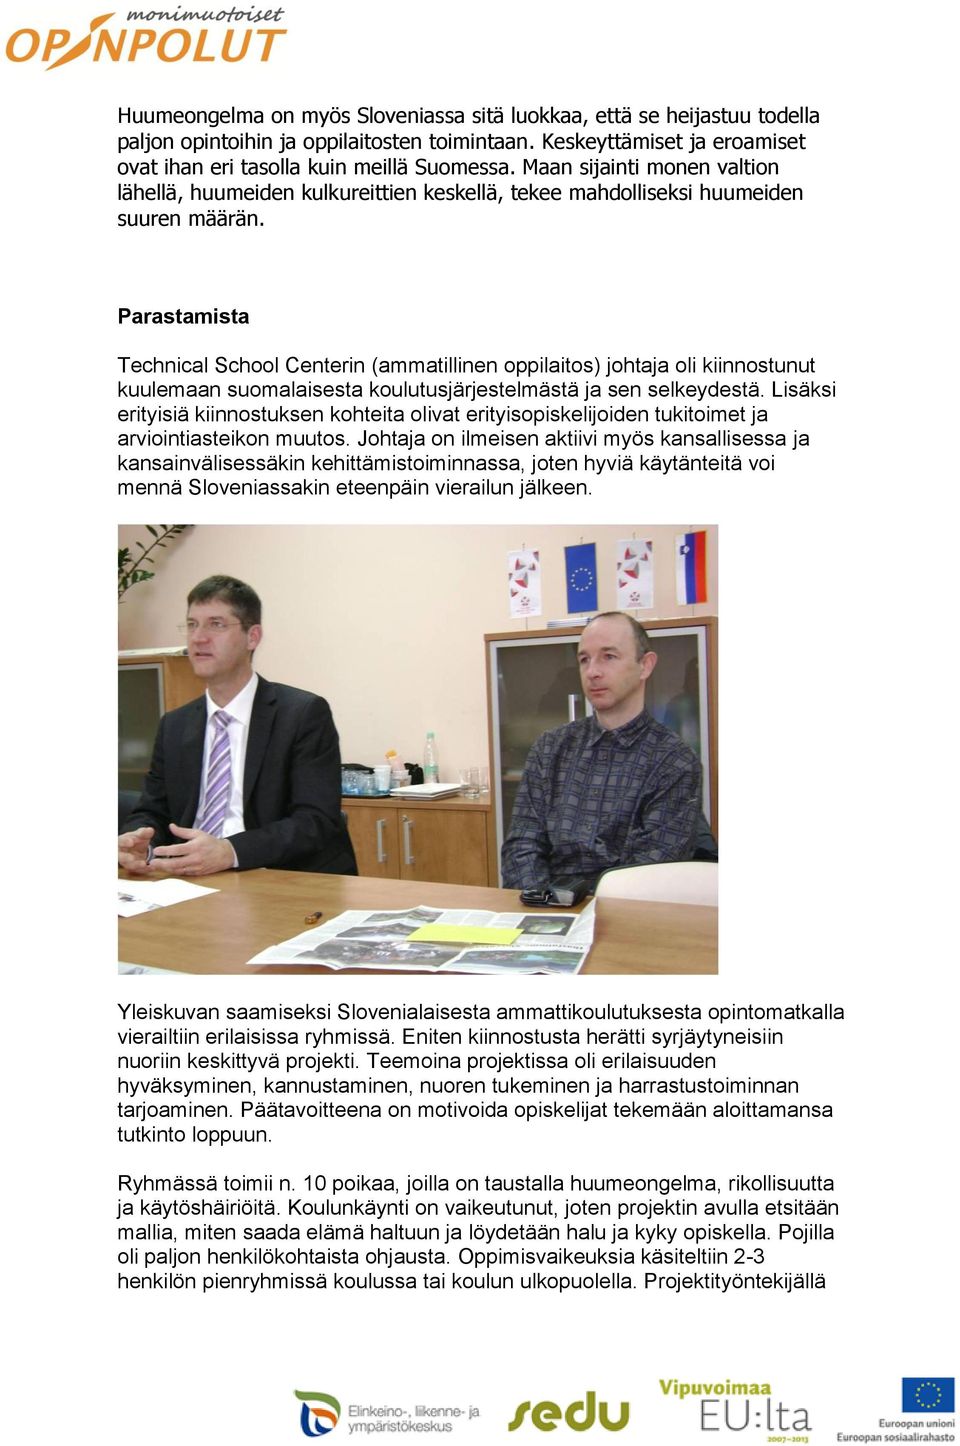 Parastamista Technical School Centerin (ammatillinen oppilaitos) johtaja oli kiinnostunut kuulemaan suomalaisesta koulutusjärjestelmästä ja sen selkeydestä.